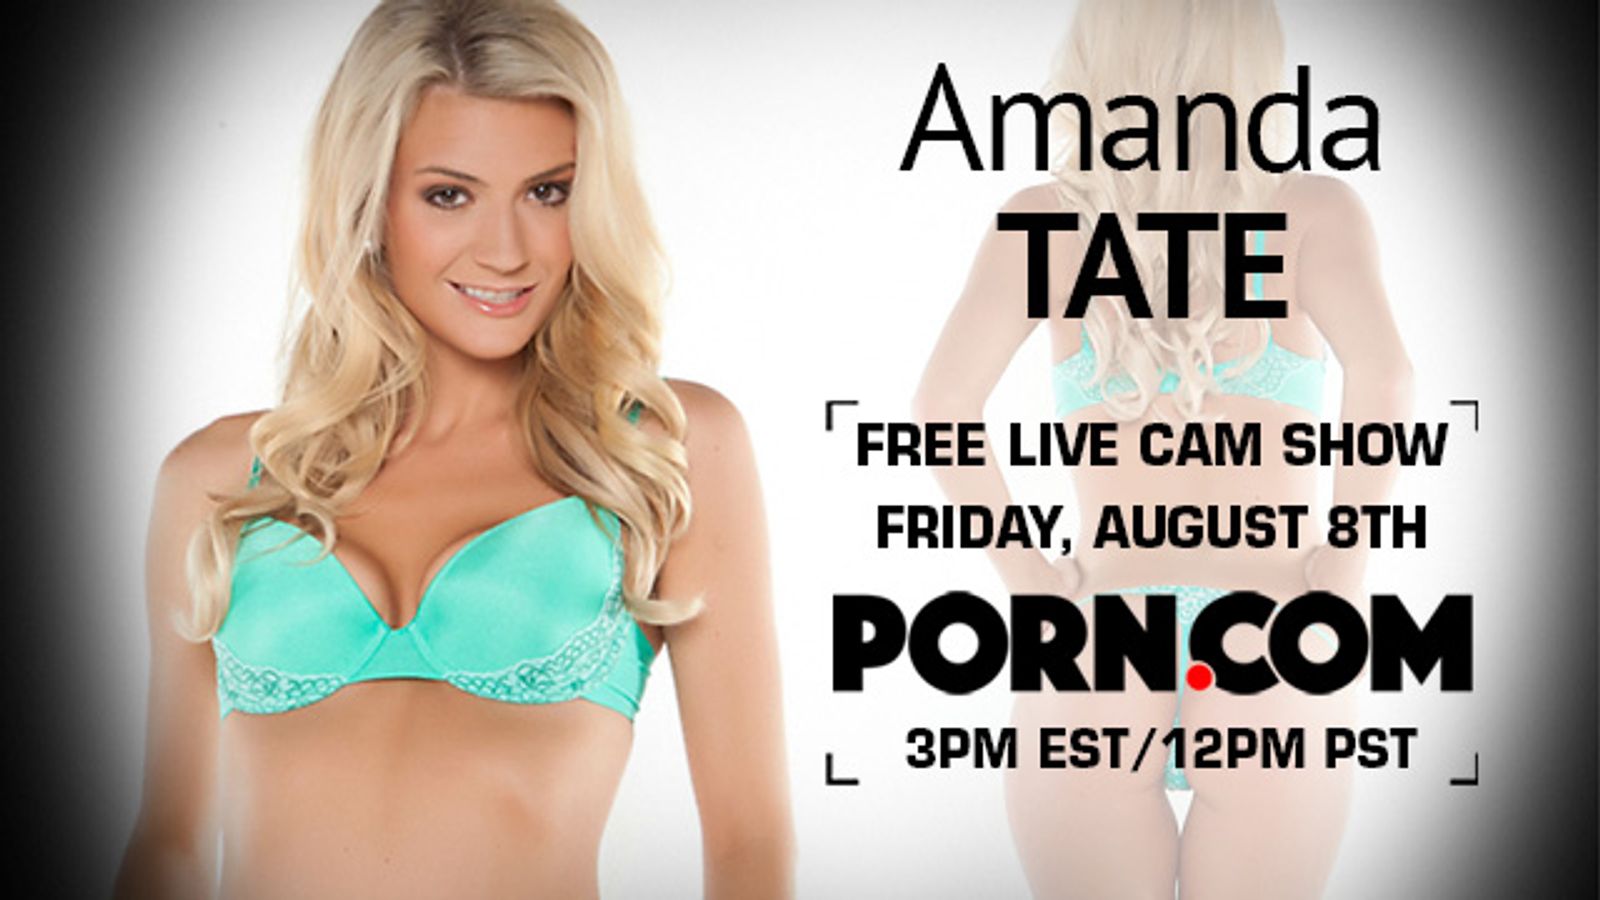 Amanda Tate in Free Porn.com Cam Show Friday